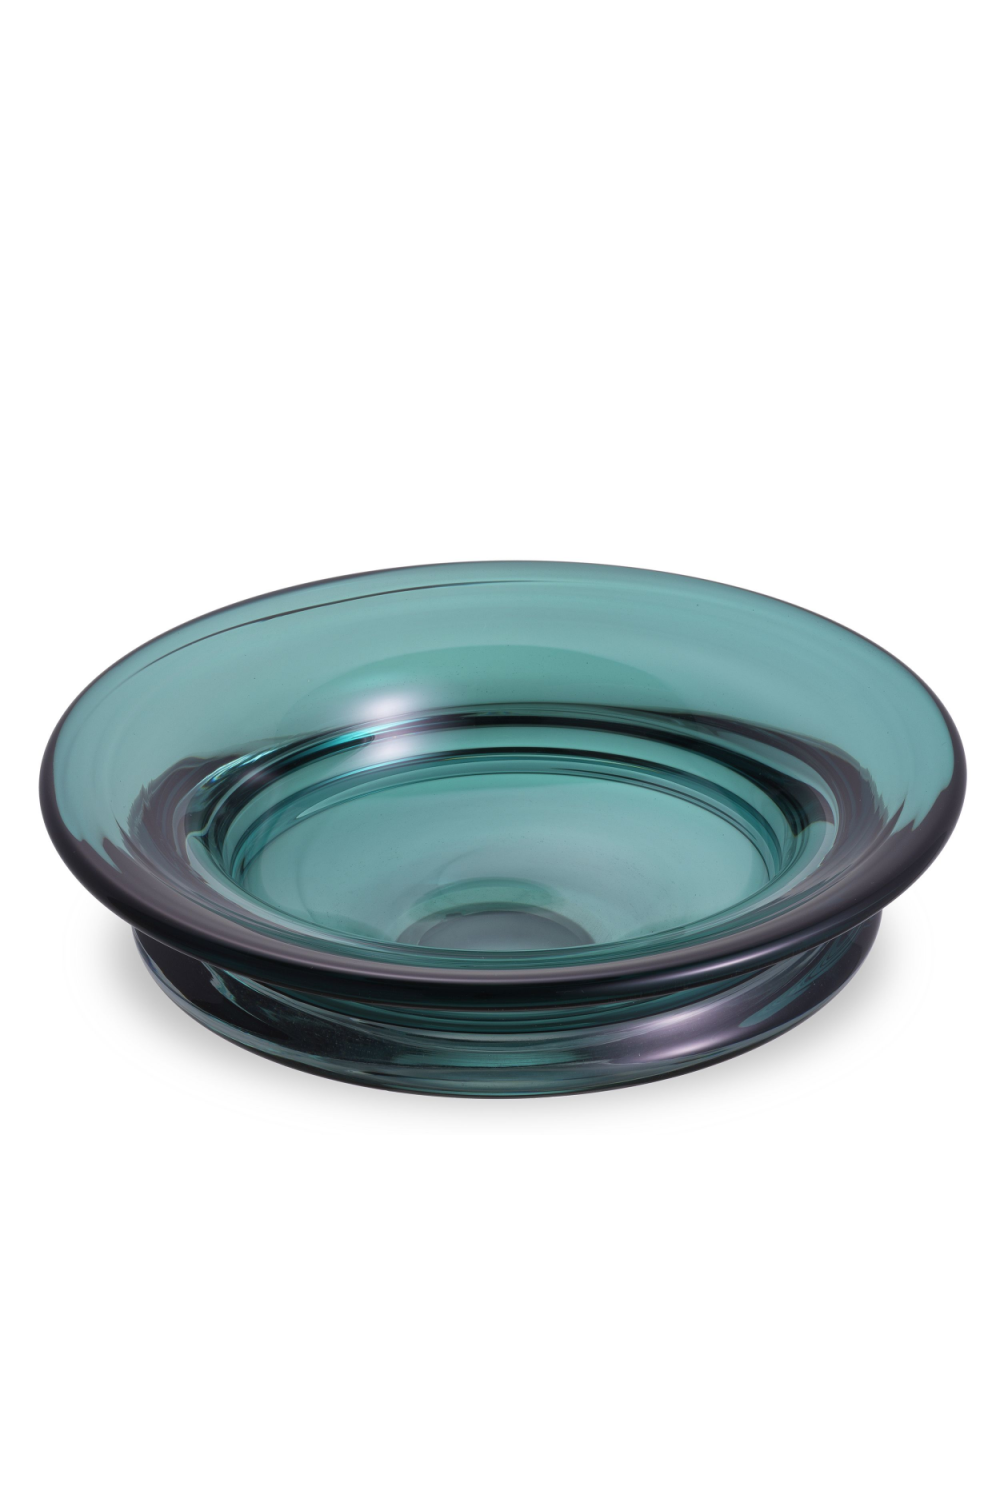 Emerald Green Glass Bowl | Eichholtz Celia | OROA